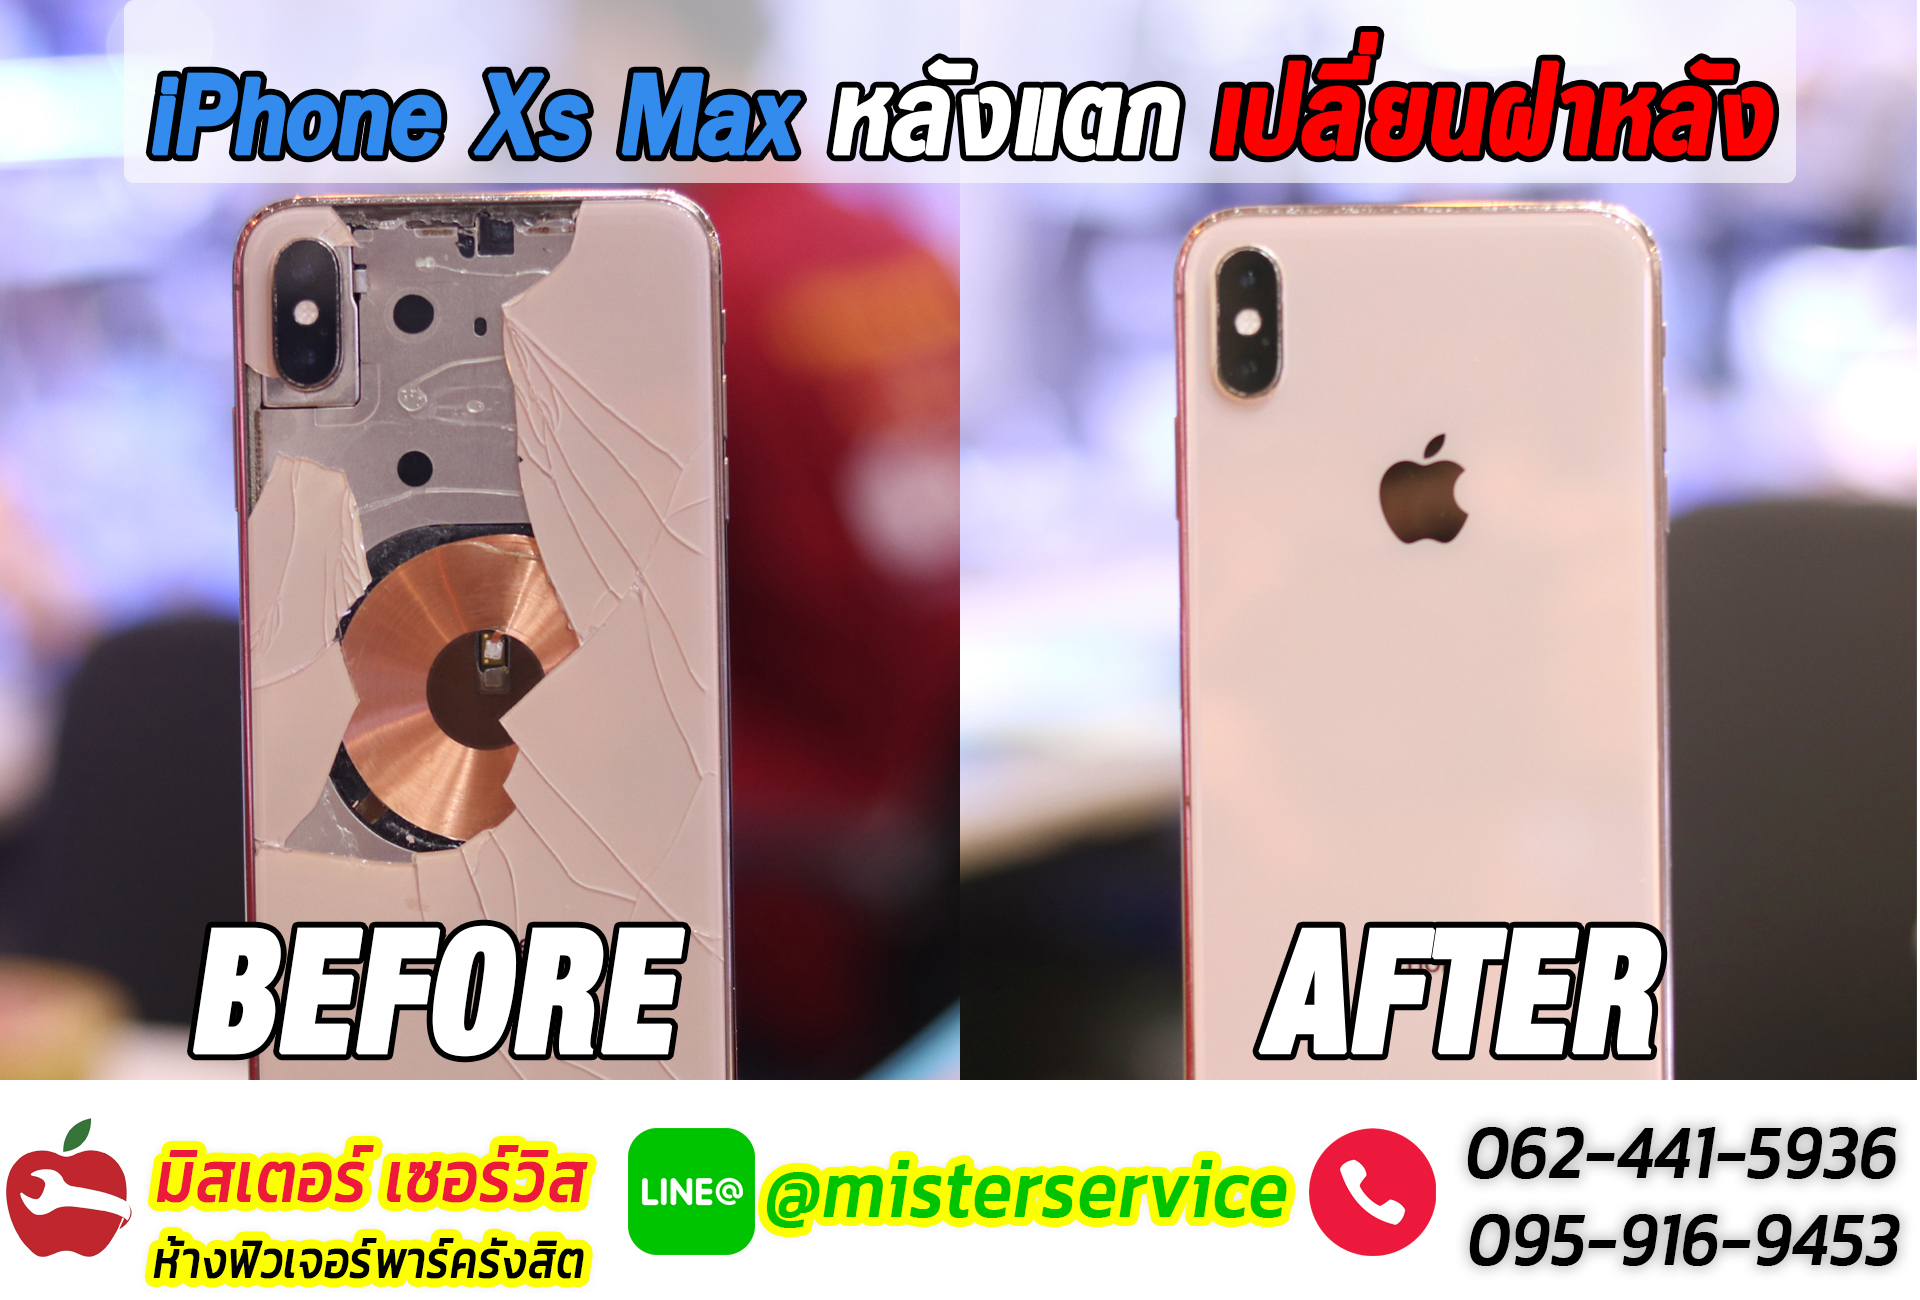 ซ่อม iphone จันทบุรี